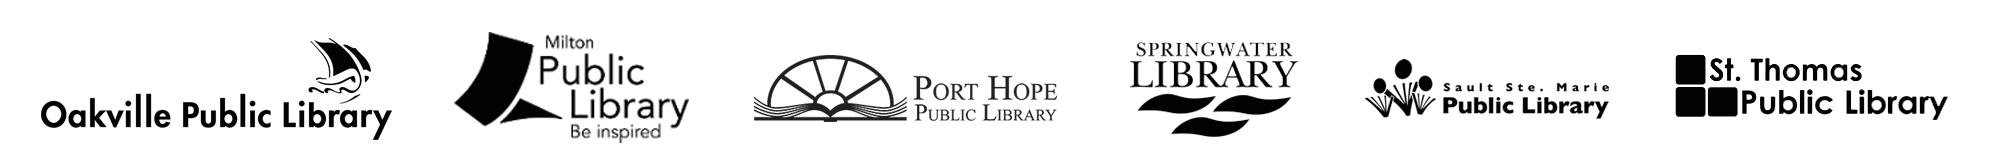 G1.ca Library Partner Logos